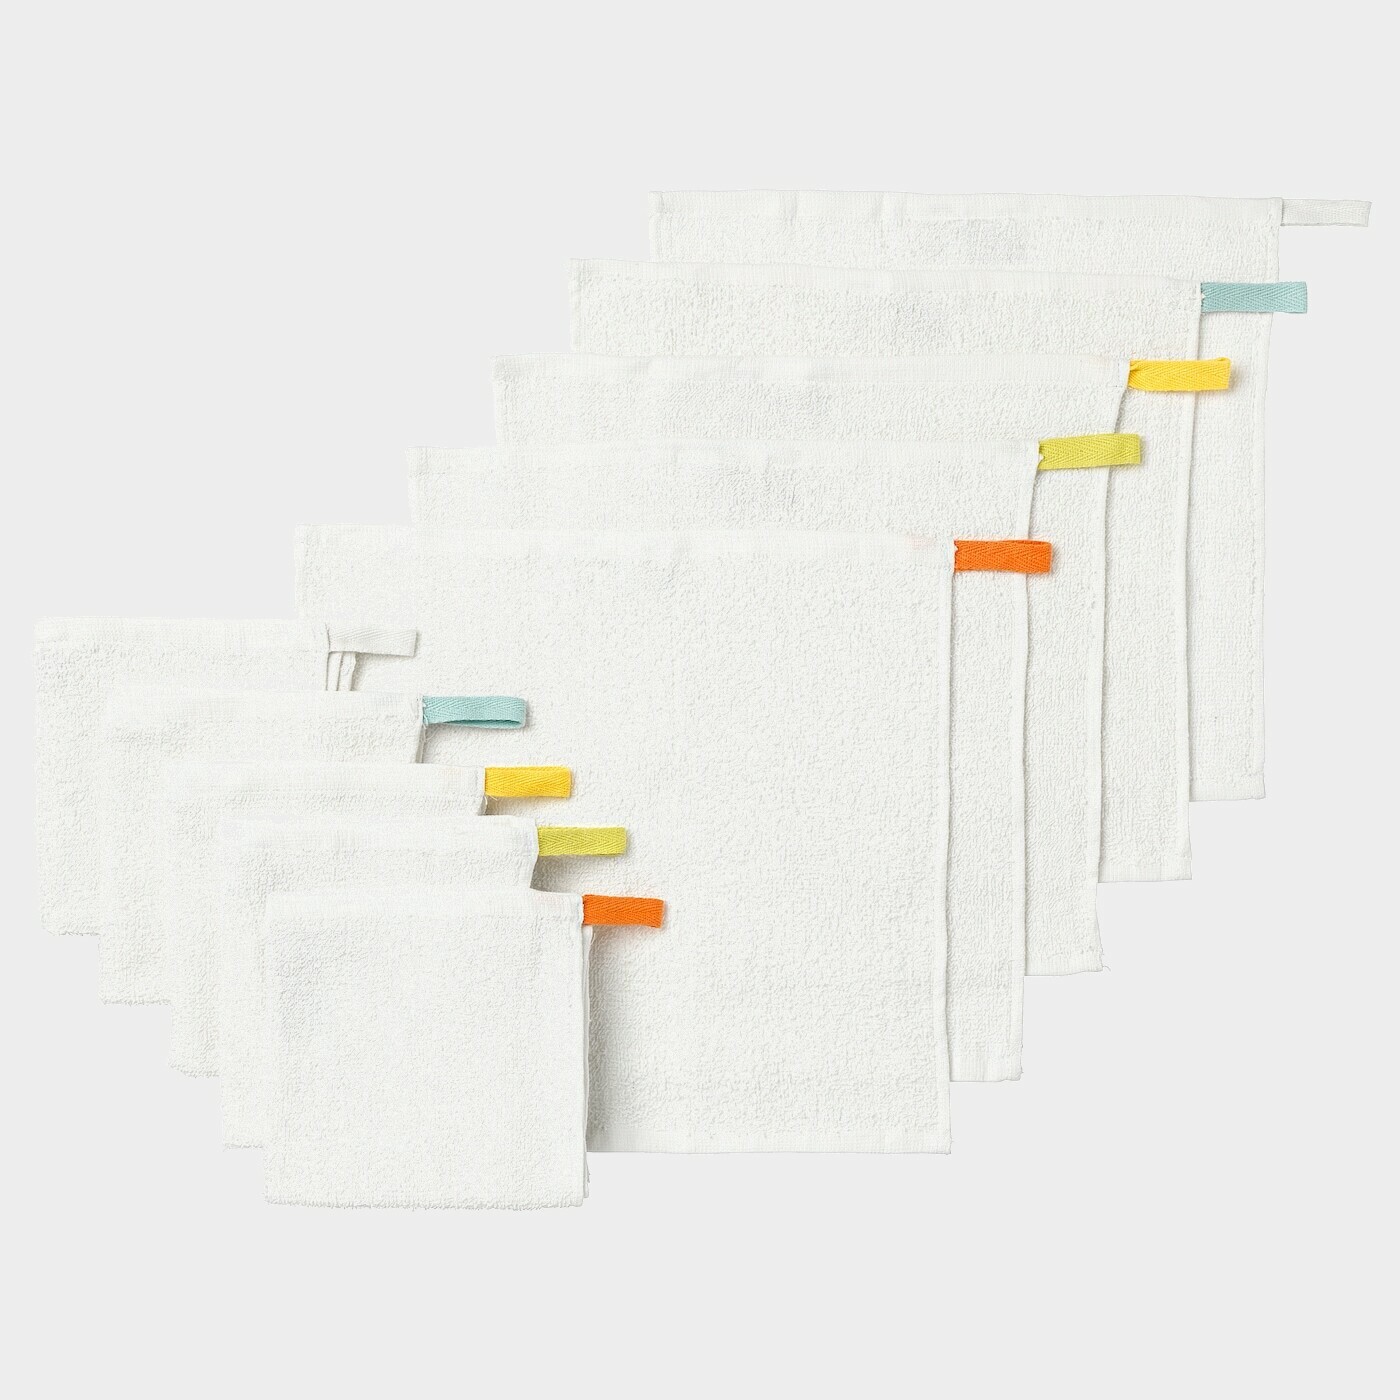 KRAMA Waschlappen  - Badecapes & Waschlappen - Textilien Ideen für dein Zuhause von Home Trends. Textilien Trends von Social Media Influencer für dein Skandi Zuhause.